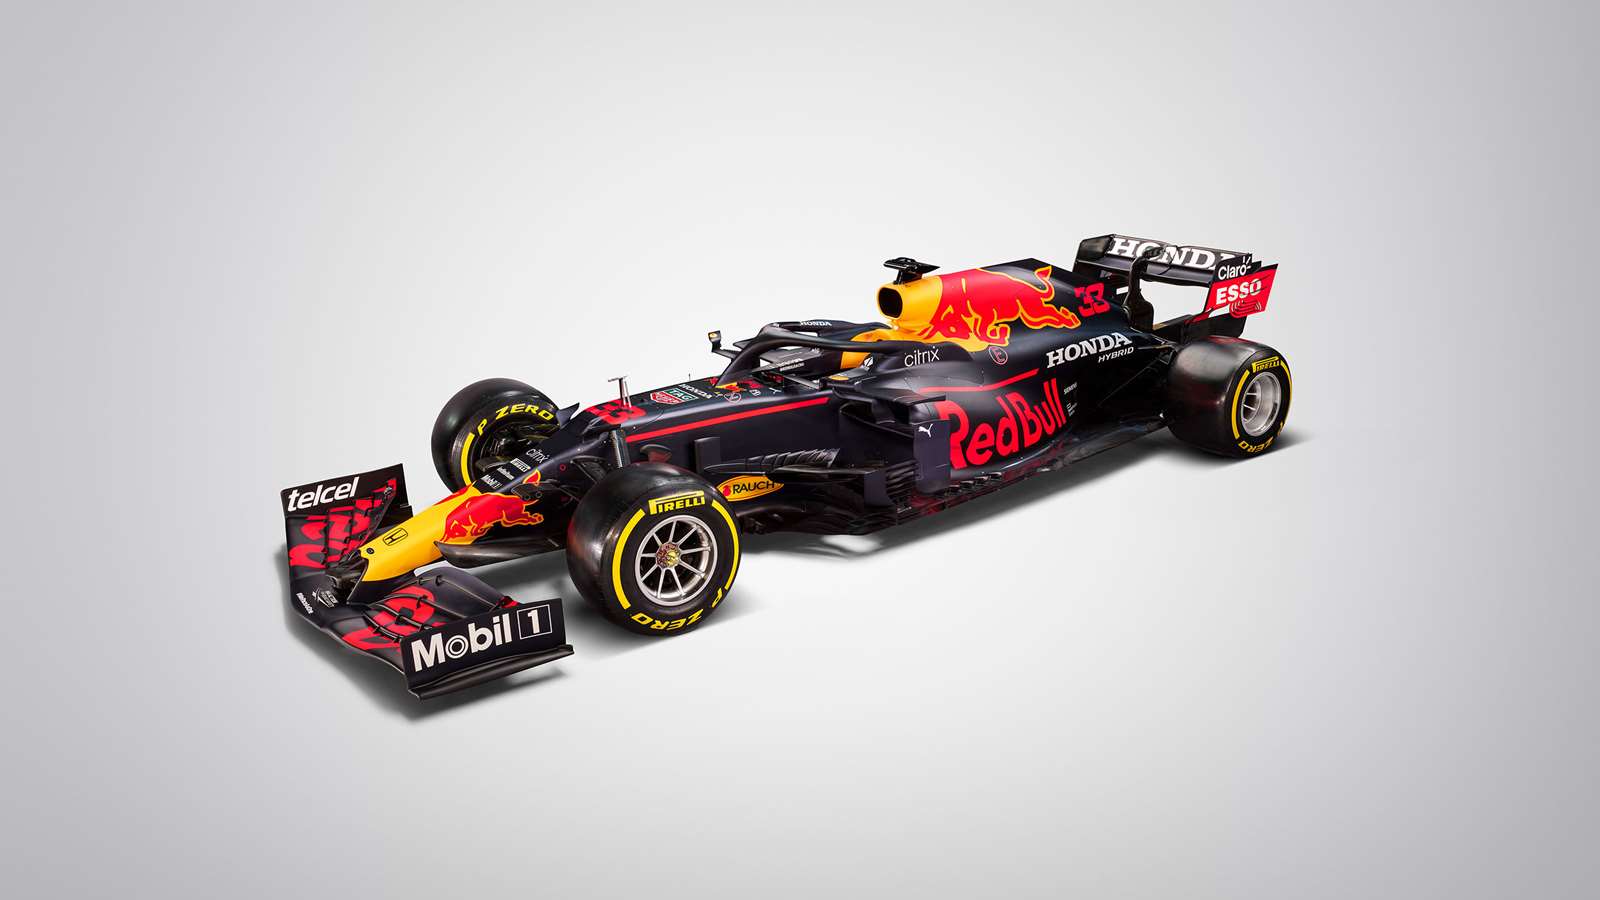 Gallery: Red Bull RB16B 2021 F1 car | GRR